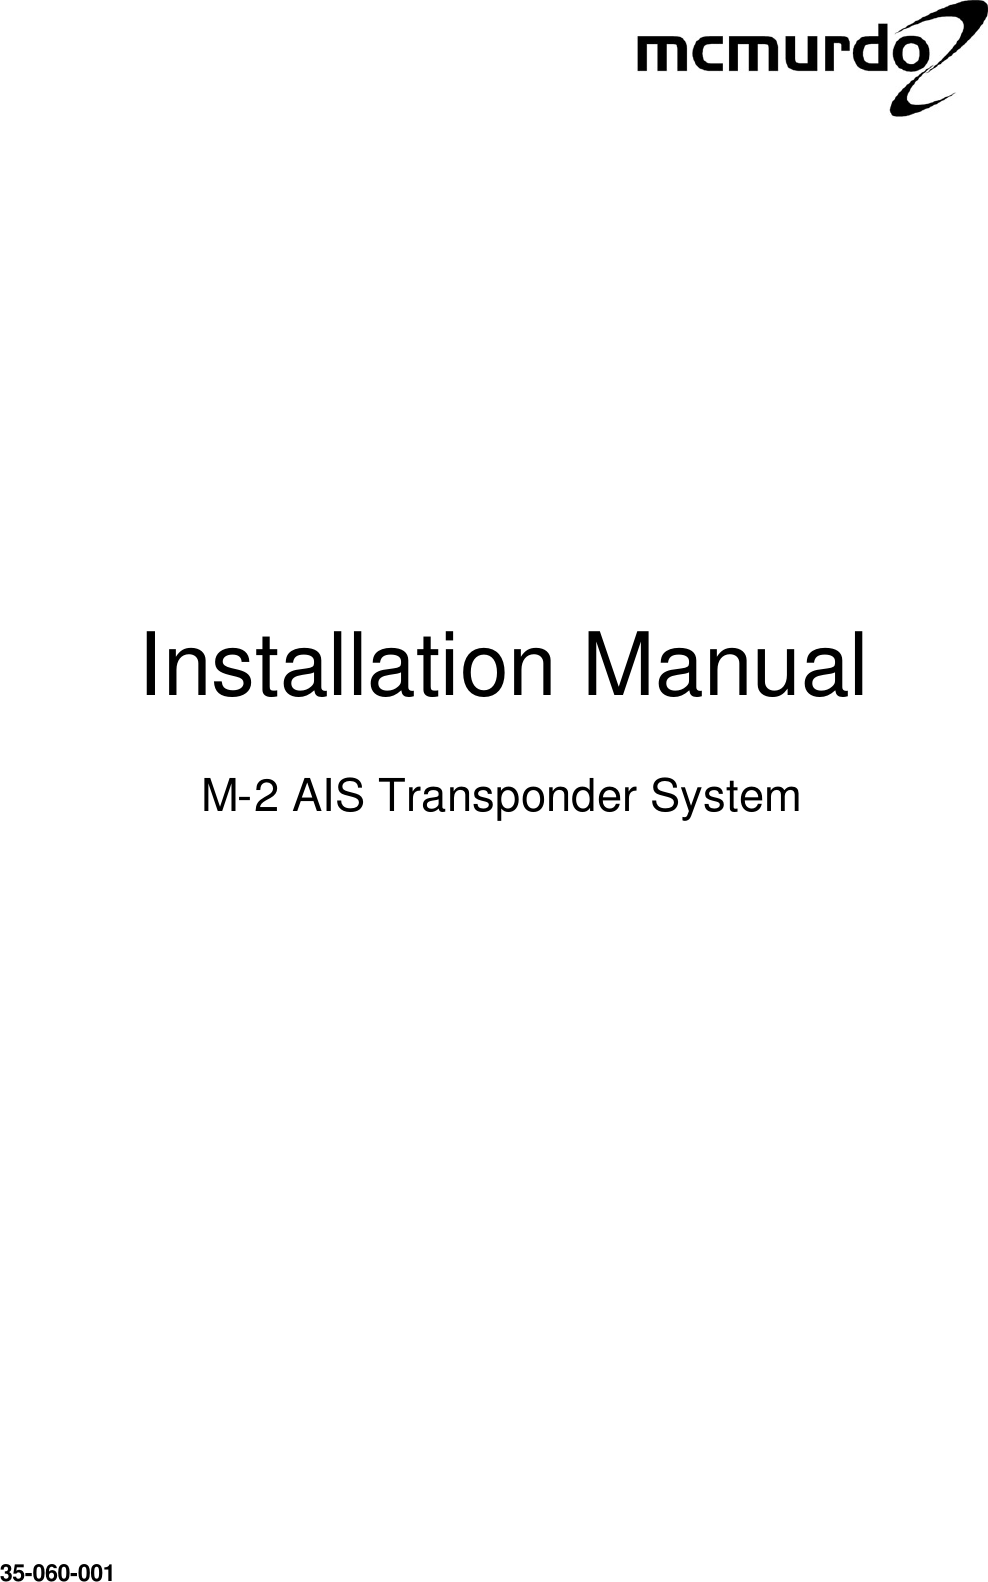                        Installation Manual  M-2 AIS Transponder System    35-060-001 